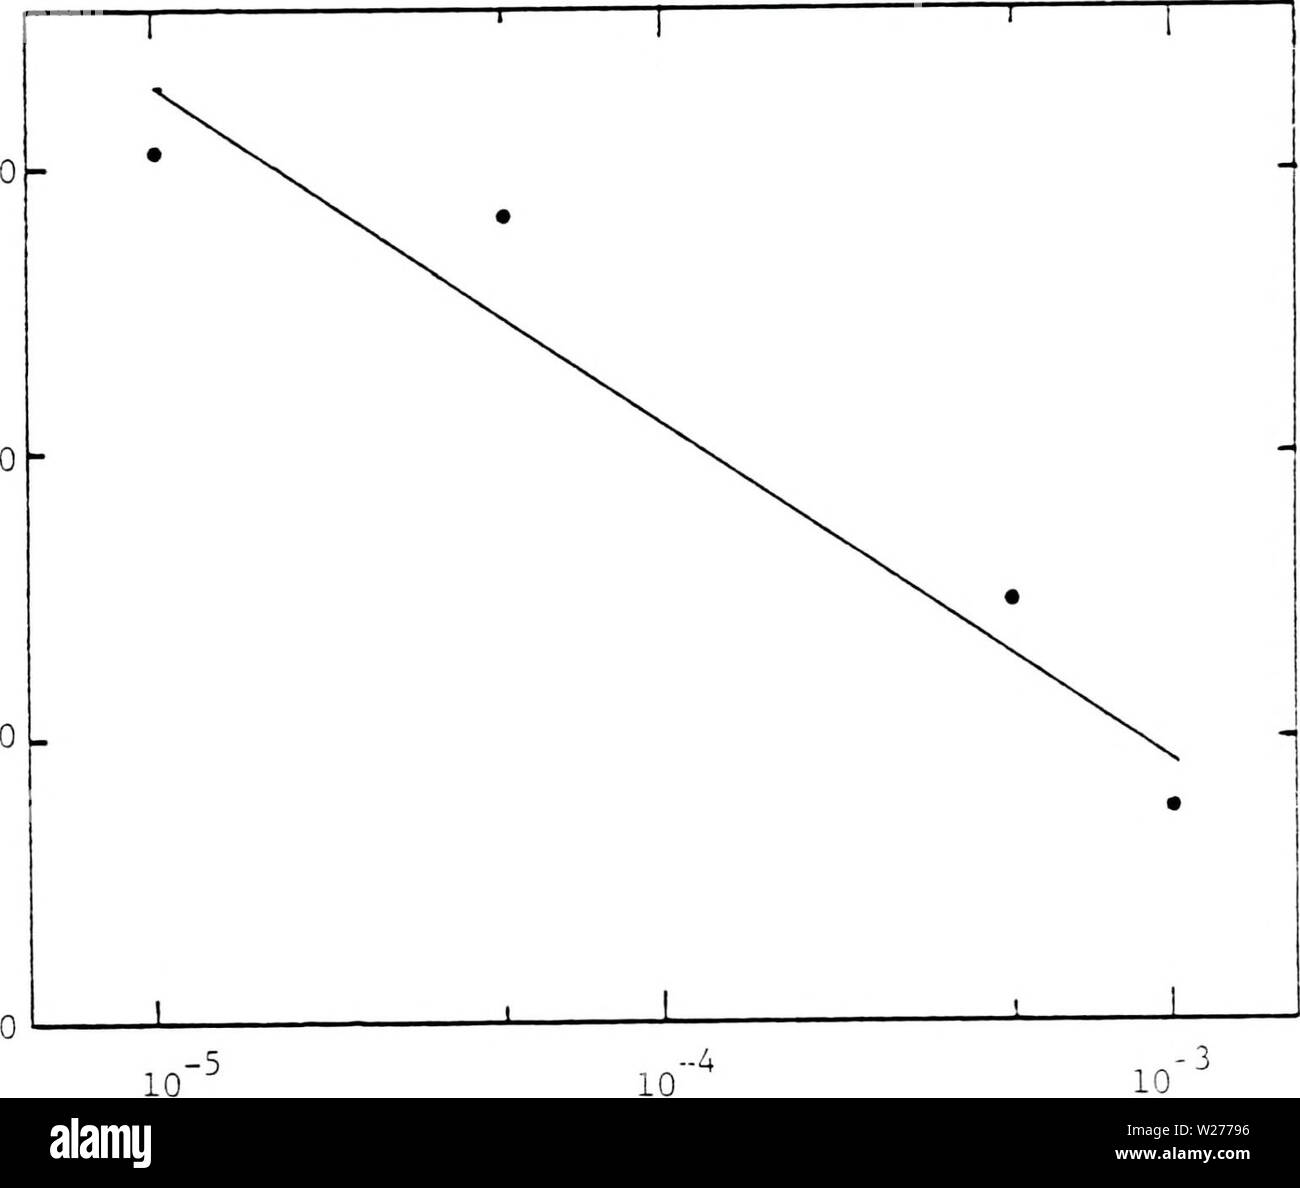 Imagen de archivo de la página 44 de la deposición, corrosión y coloración. La deposición, corrosión y coloración de trióxido de tungsteno de películas delgadas depositioncorros electrocrómica00soles Año: 1983 3es 3.0- 1.0 - 0.0 P (Torr) Figura.2.18. Coeficiente de difusión de electrones en WO films versus la presión parcial de oxígeno durante la deposición. Foto de stock